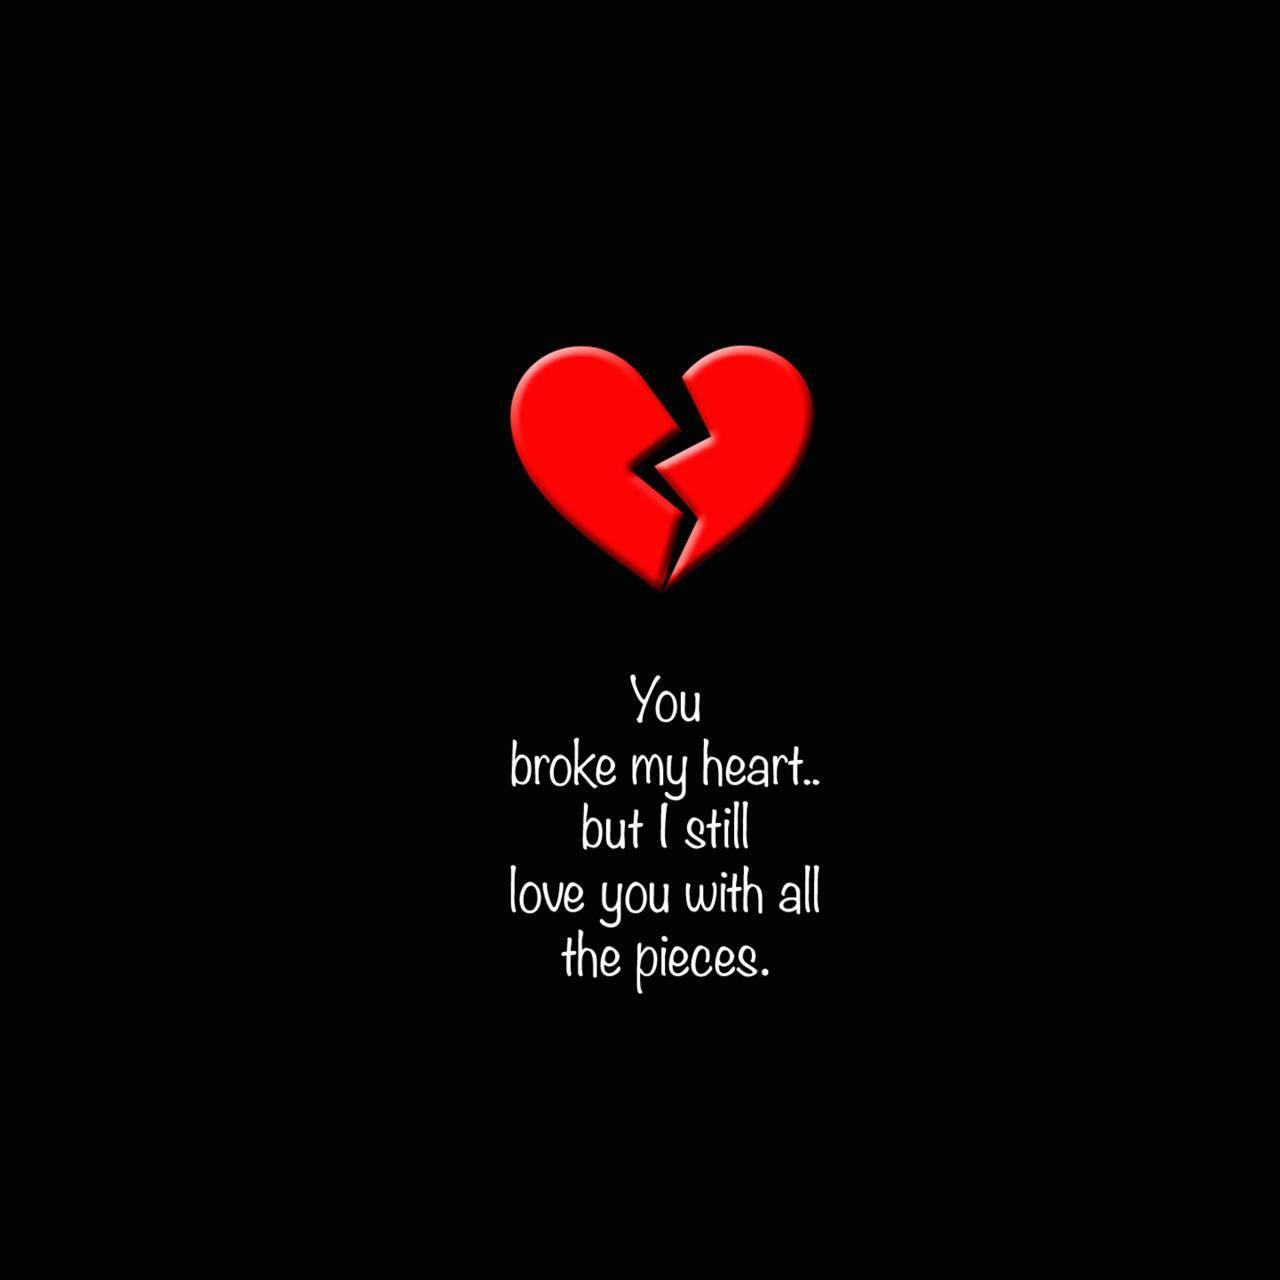 Broken Heart. Broken heart wallpaper, Broken heart image, Broken heart